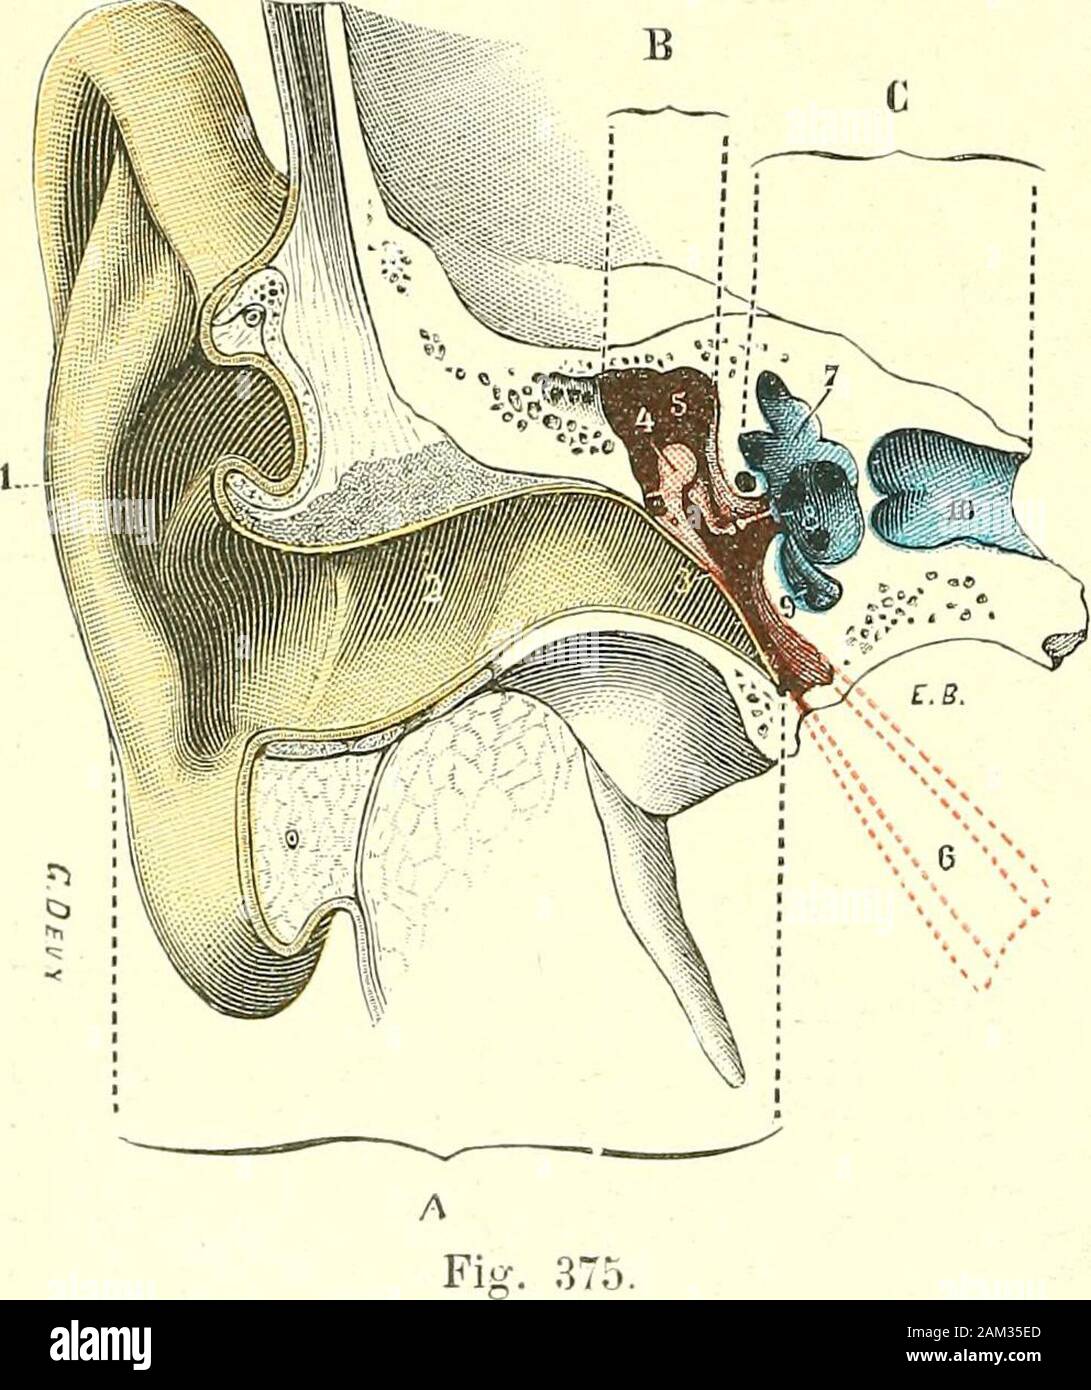 Traité d'anatomie humaine . ue. (LorciUc externe (A) est colorée en javne loreille, /-.i i . , . , . Moyenne (B) 6&gt ;" roï(f/e, loreille interne(C) pu bien LhCZ aUimaUX.) iCS une vie d'aeriC-nnC, et l pavillon de roreille. - Conduit auditif externe, 2. - TOUt particulièremeut chcZ ICS- 3 mammi, membrane du tvmpan. - 4, la caisse du tmnan avec la c^ n -i i-i-i&gt ; i- chaîne des osselets. - 5 orifice dentrée des cavités, mas- f^rCS, 1 appareil auditif - toùliennes 6 SC complique trompe dEustache, sHuée sur plan des Nations unies |(.,,f nj-, ^^ nprfpptinnnant ncrfec, Ce-antérieur a celui de la coupe. - 7, oreille dans Banque D'Images